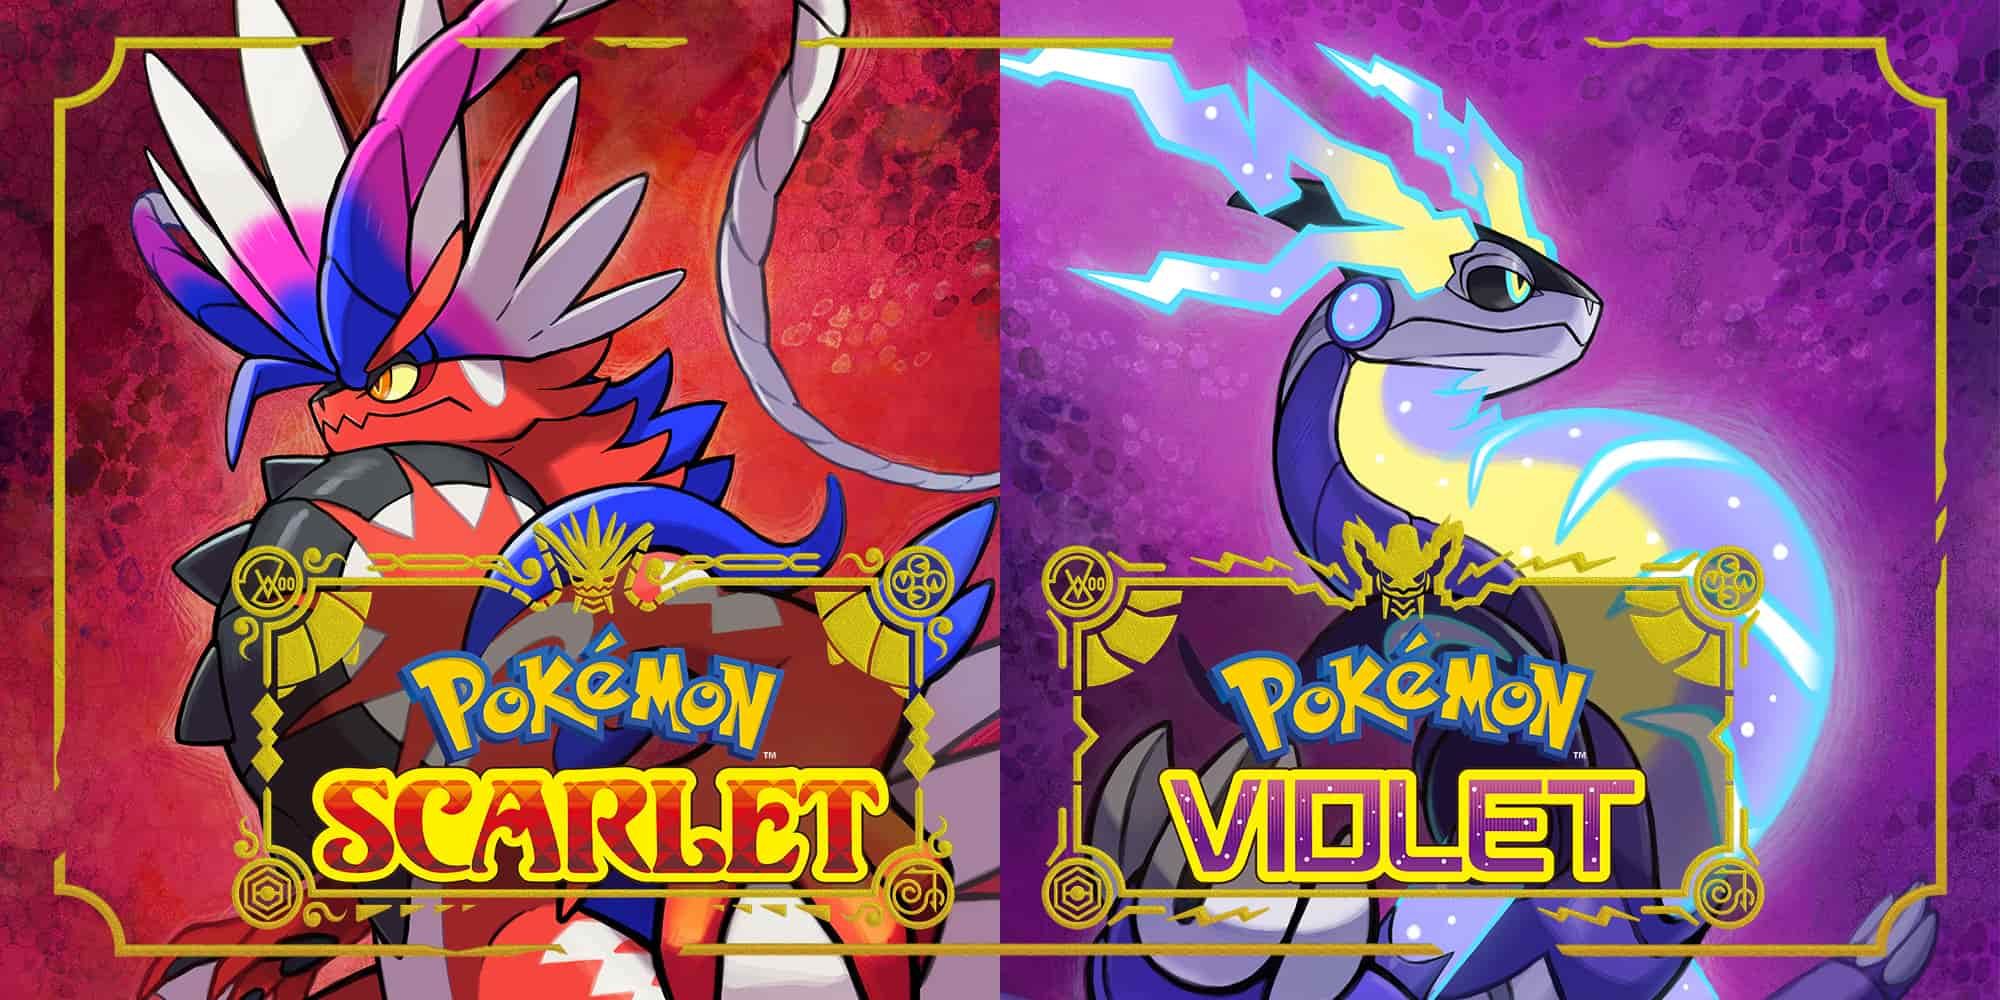 10 Best Pokémon From the Pokémon Scarlet and Violet Pokédex